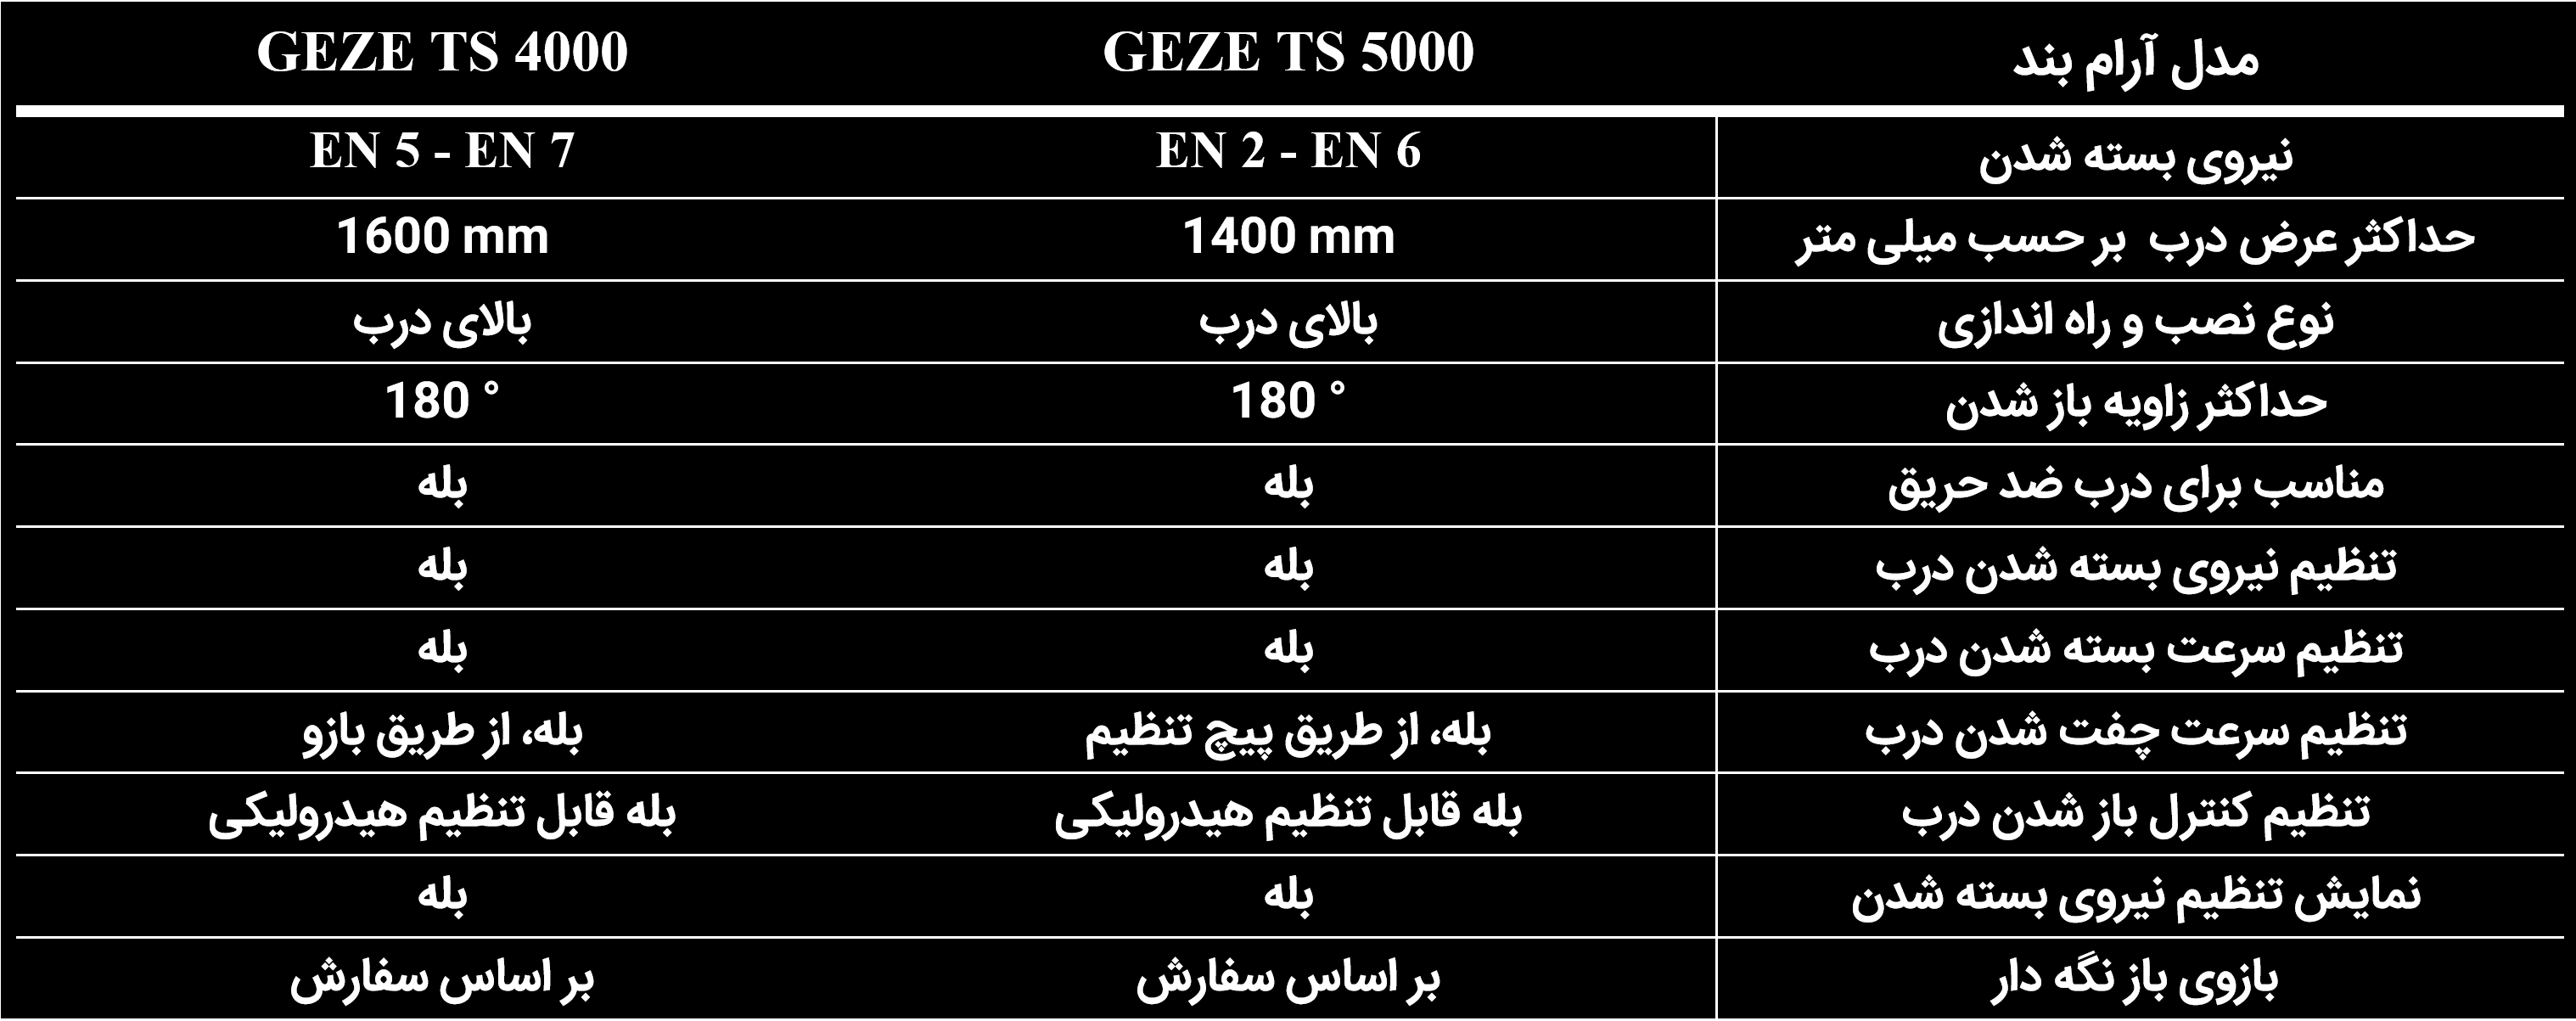 مقایسه آرام بند GEZE TS 5000 با آرام بند GEZE TS 4000 - آسیا دُر